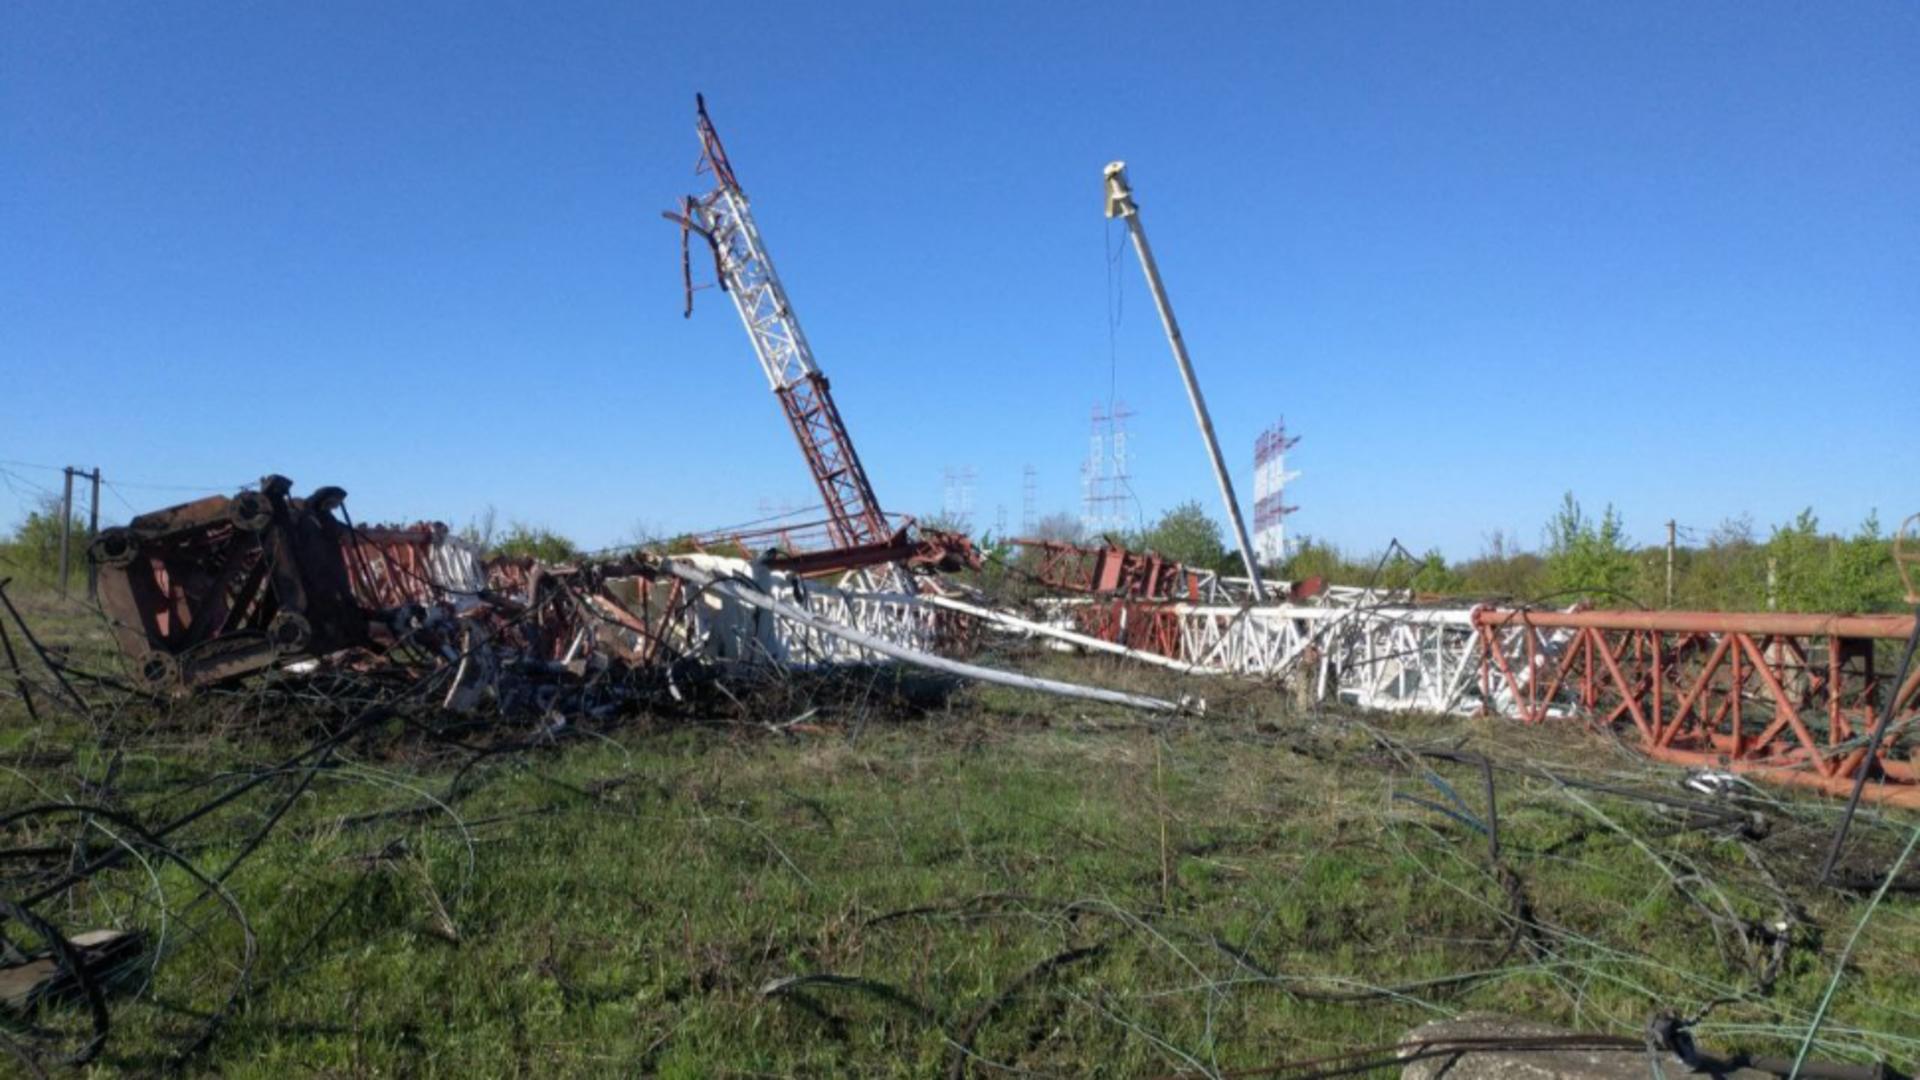 Antene radio rusești distruse de, nu se știe cine, în Transnistria. Foto/Profimedia